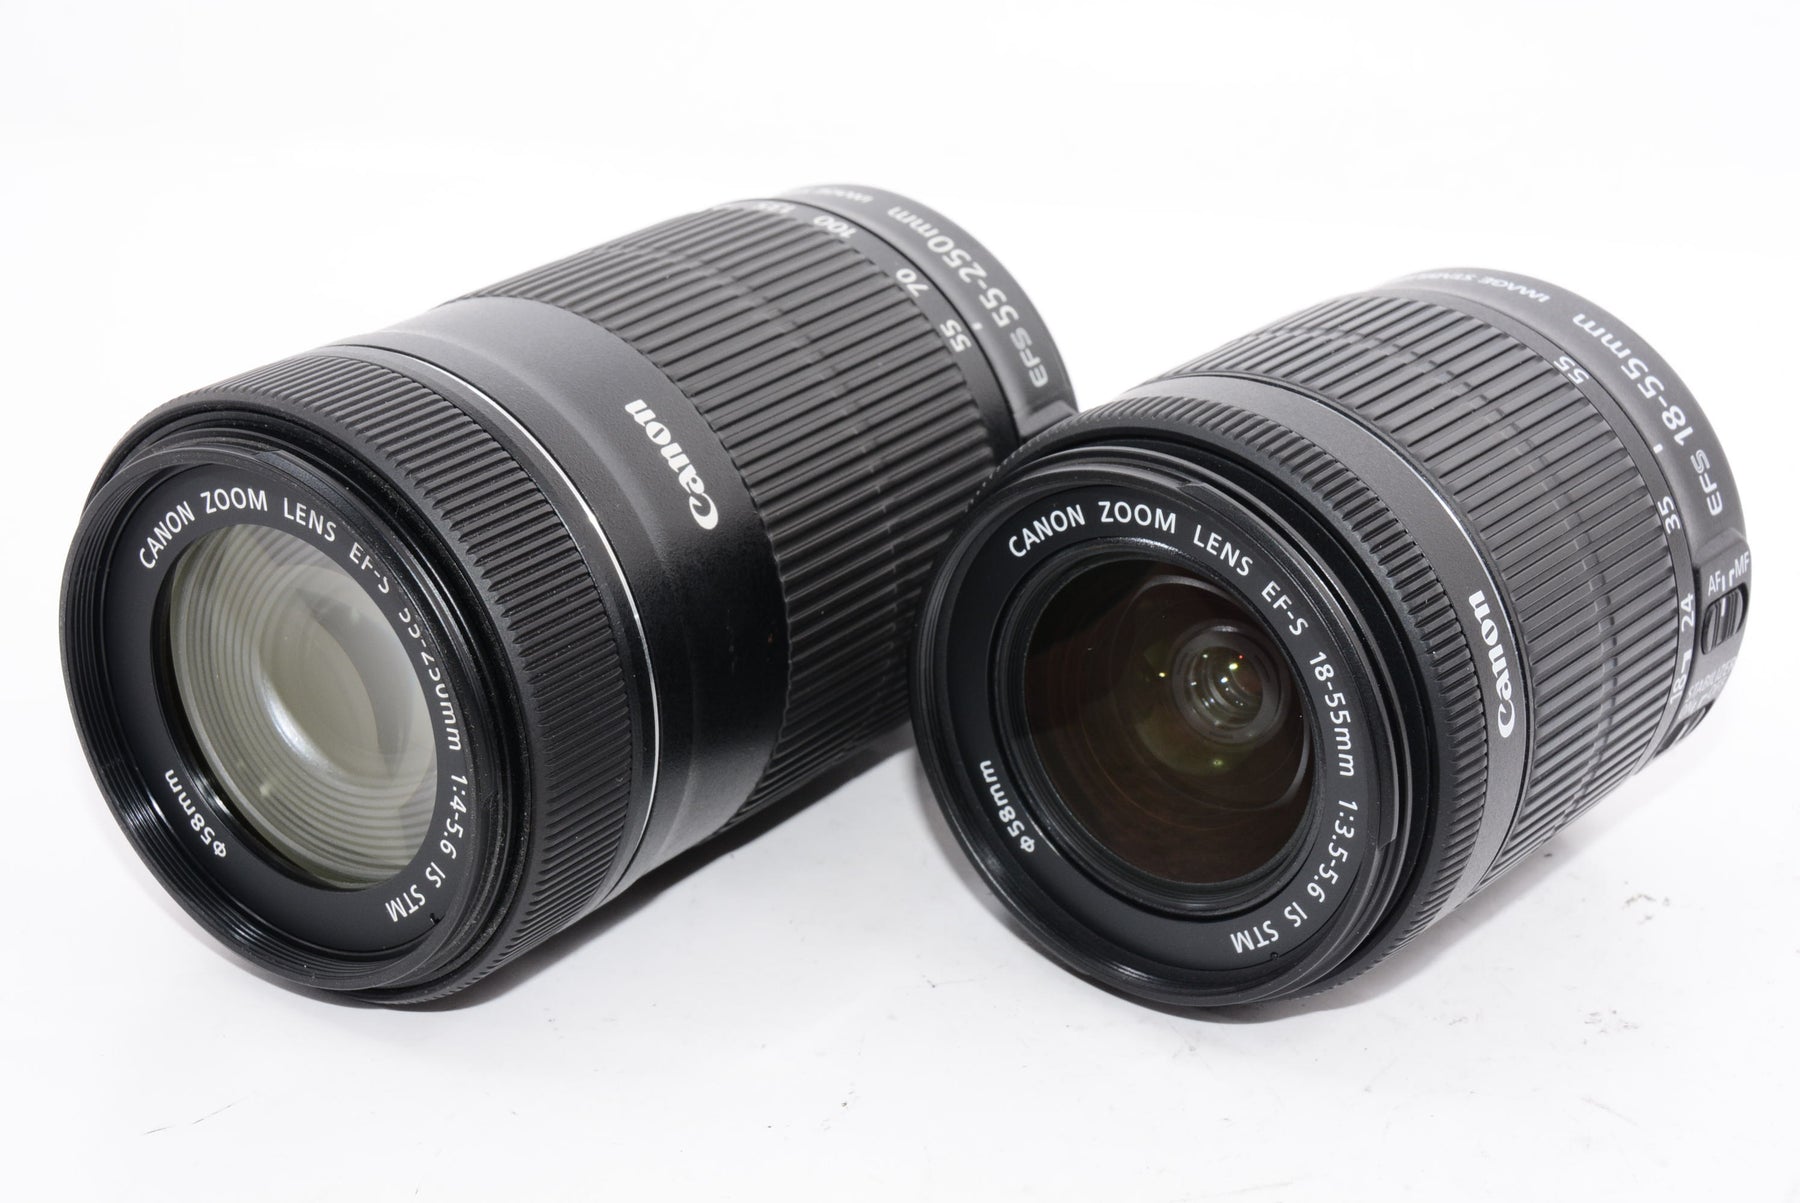 【外観特上級】Canon デジタル一眼レフカメラ EOS Kiss X8i ダブルズームキット EF-S18-55mm/EF-S55-250mm 付属 EOSKISSX8I-WKIT